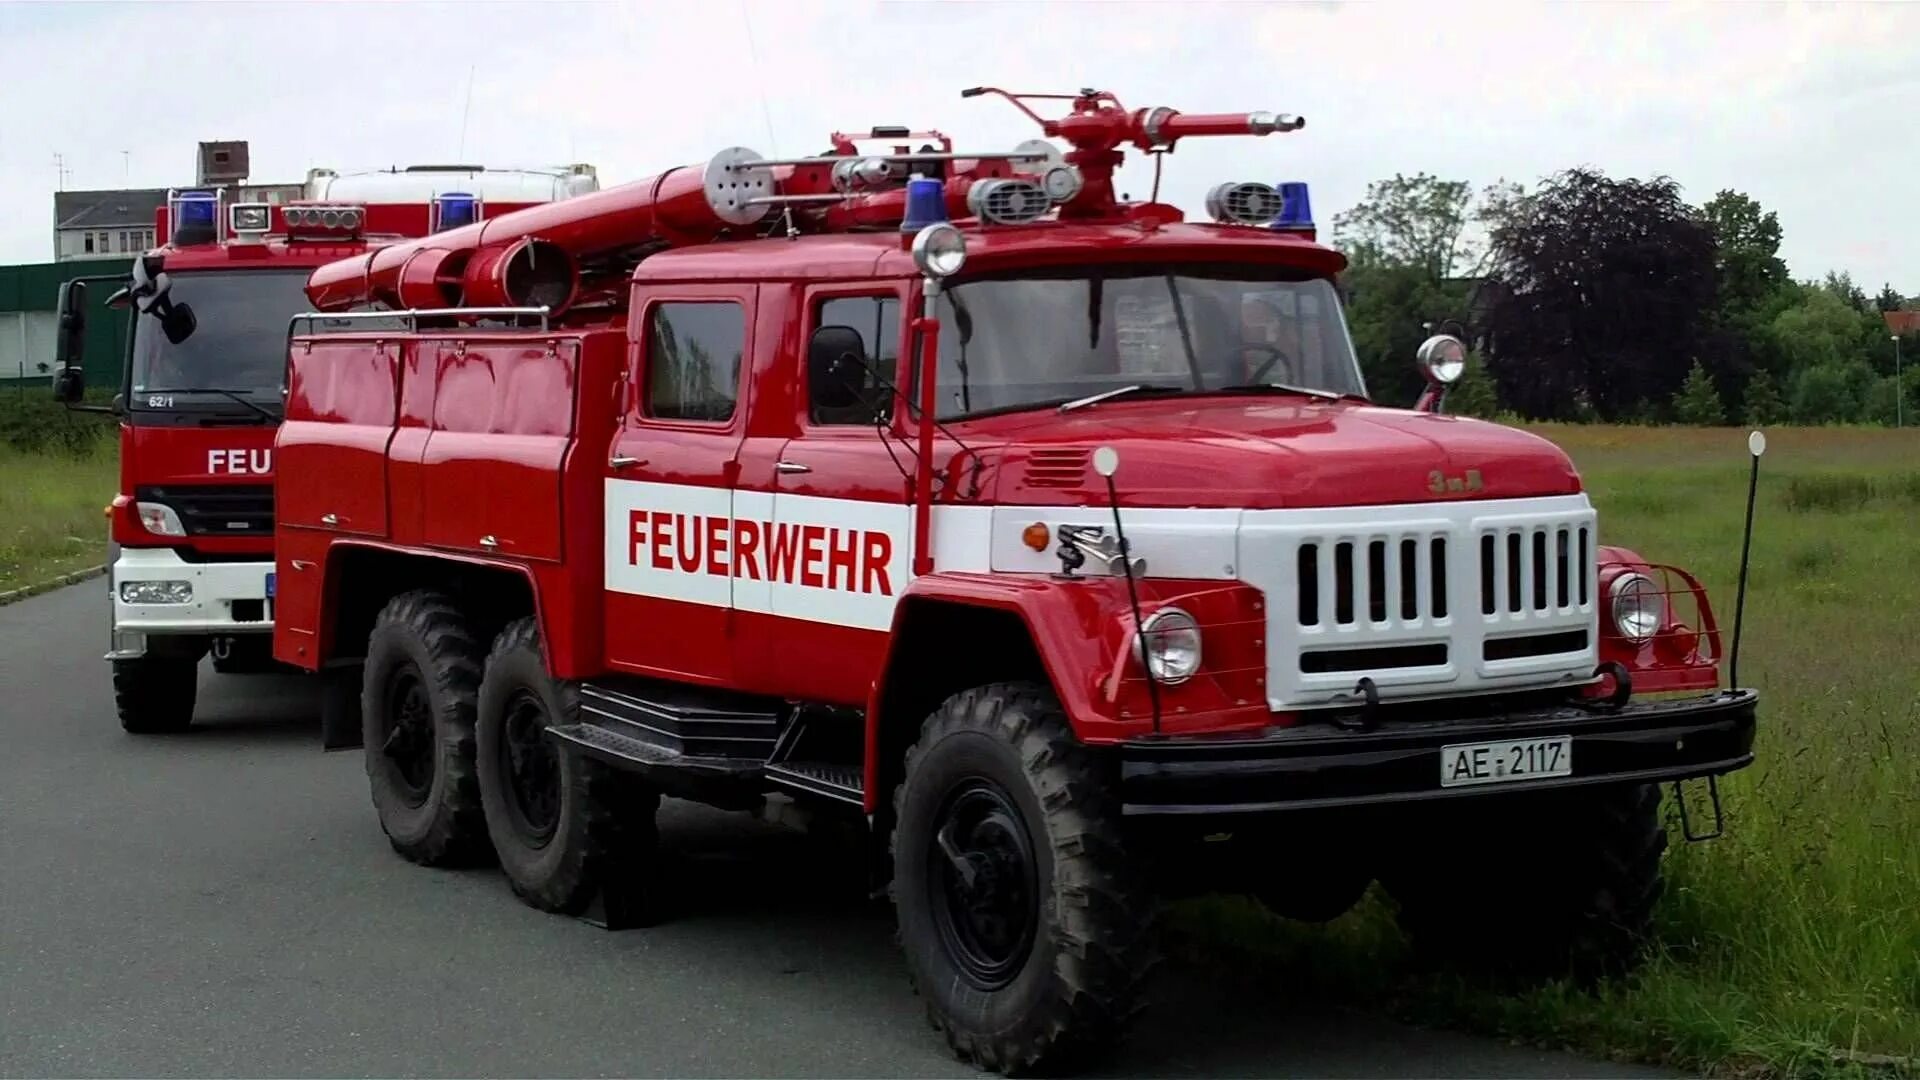 Посадка пожарных в автомобиль. Пожарная машина ЗИЛ 131. ЗИЛ 131 пожарный Германия. ЗИЛ 130 пожарный. ЗИЛ-131 пожарный автомобиль.